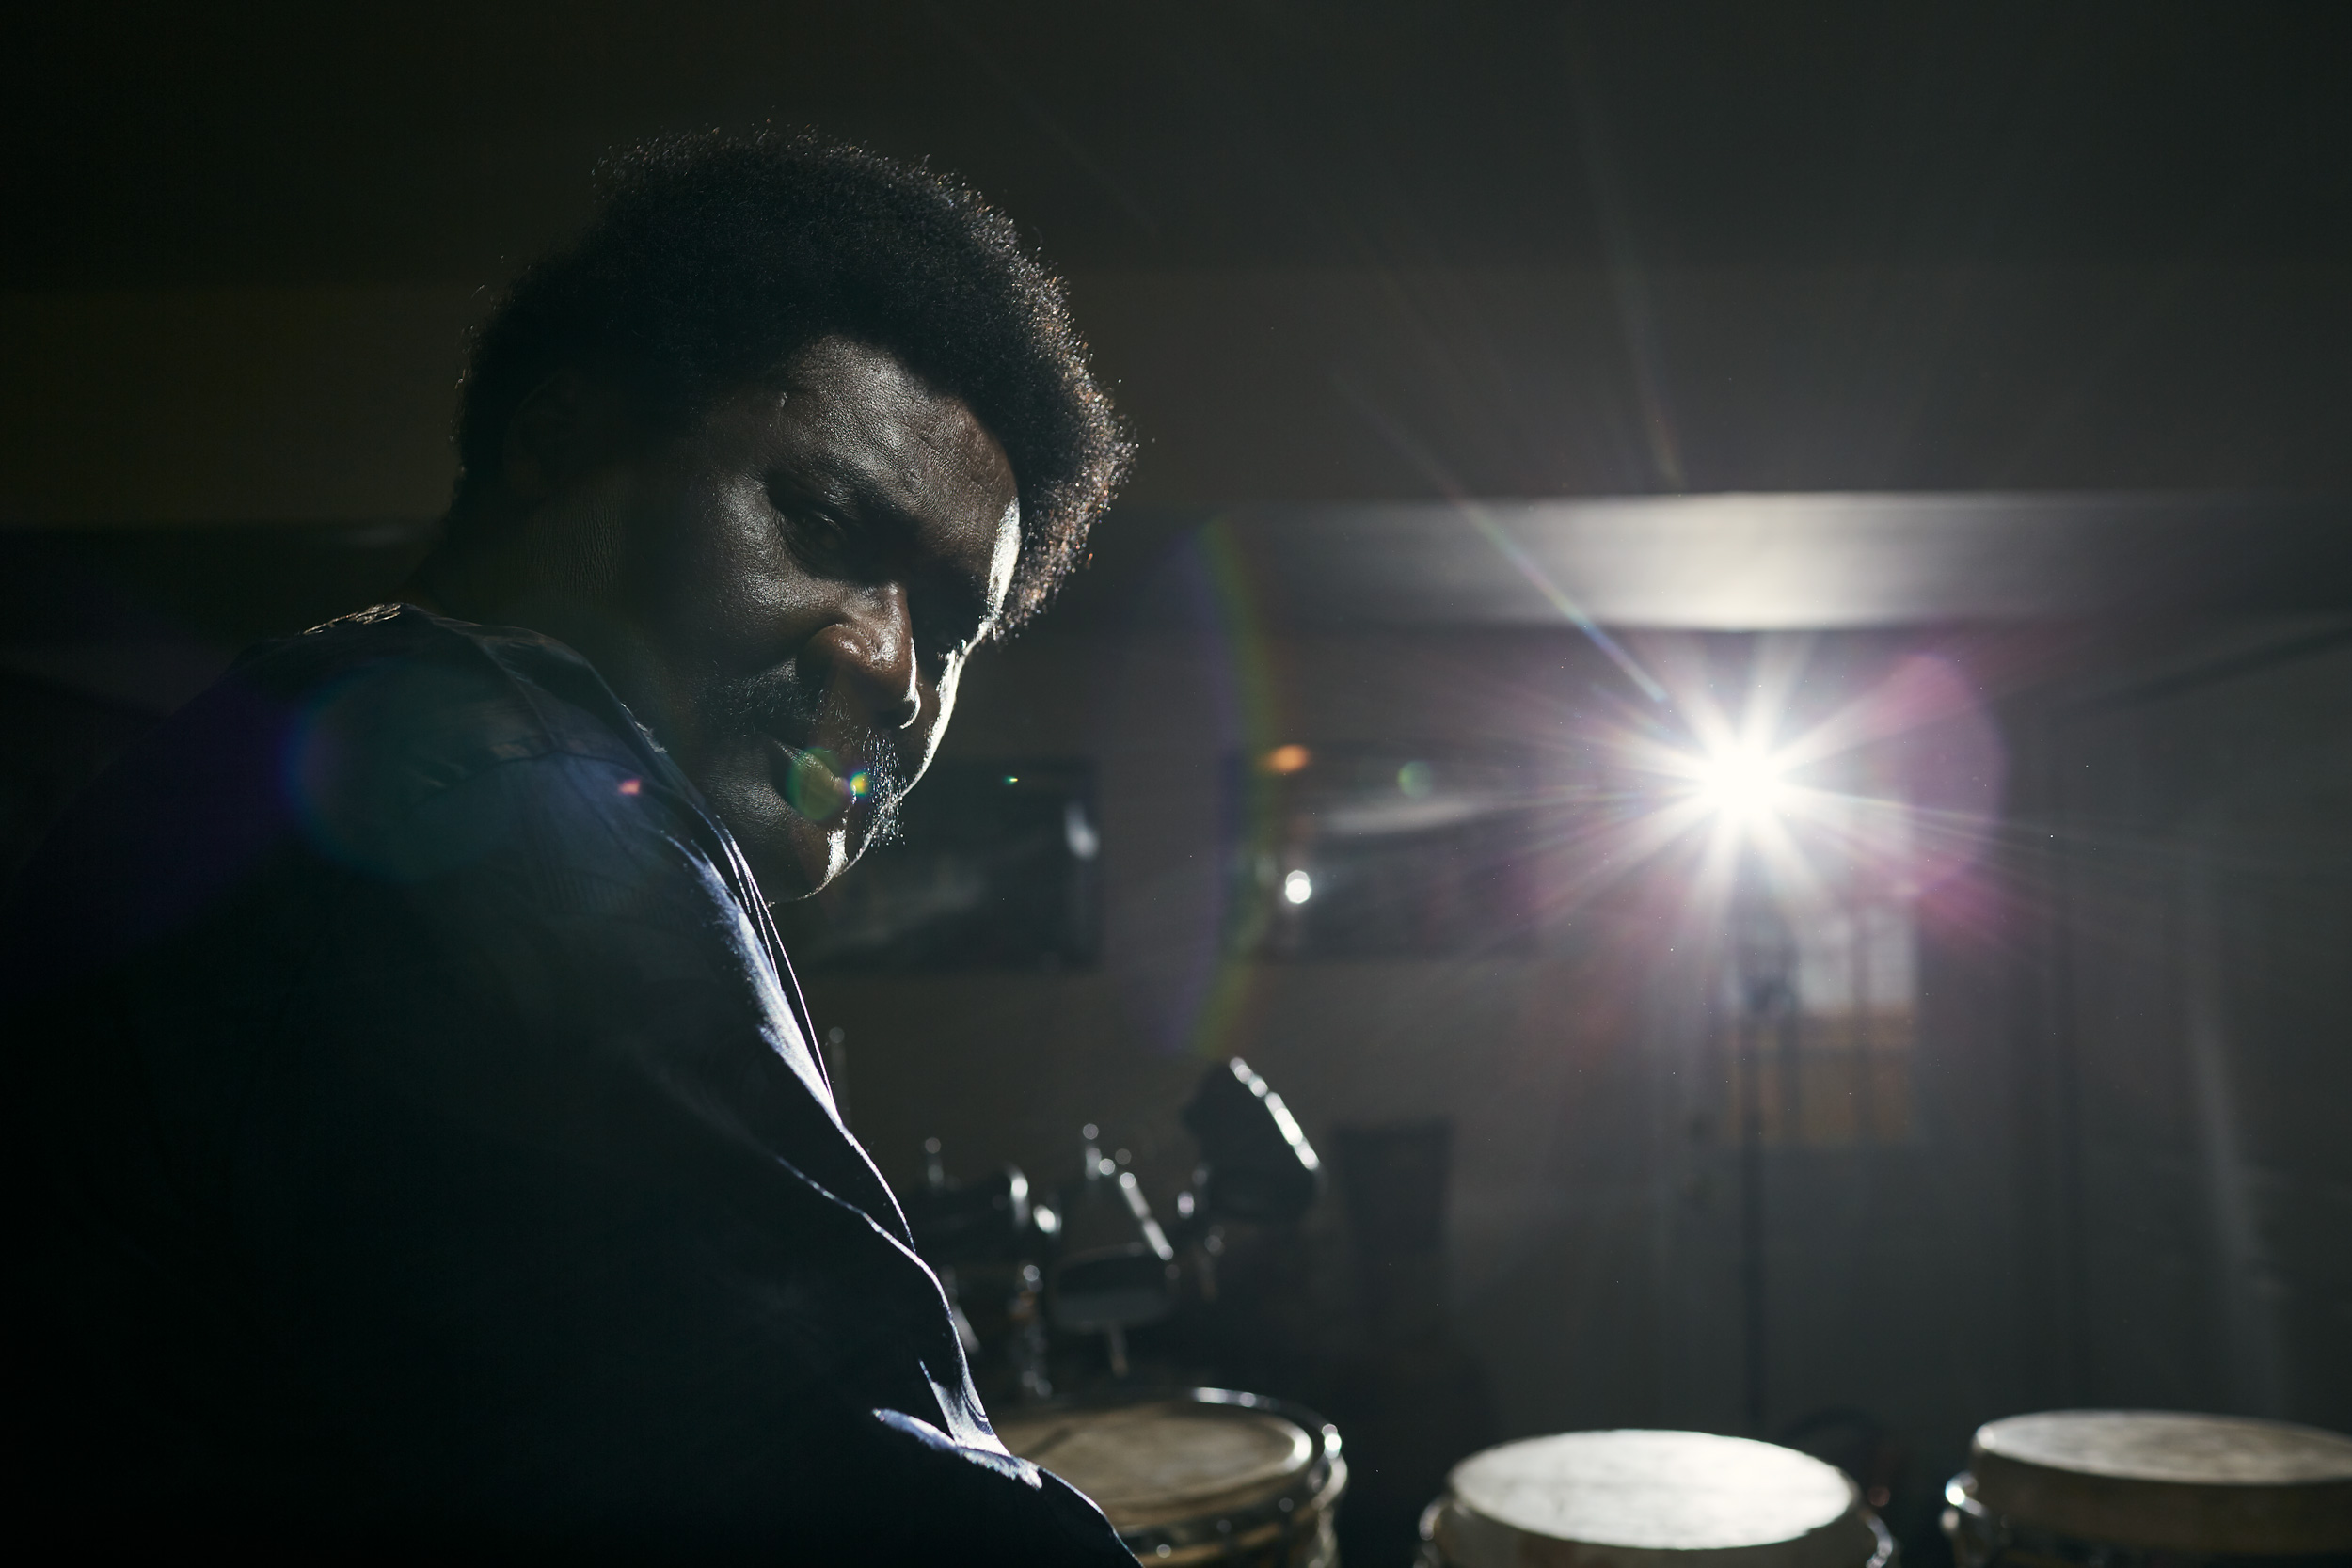 Okyerema Asante portrait with drums, washington dc portrait photography